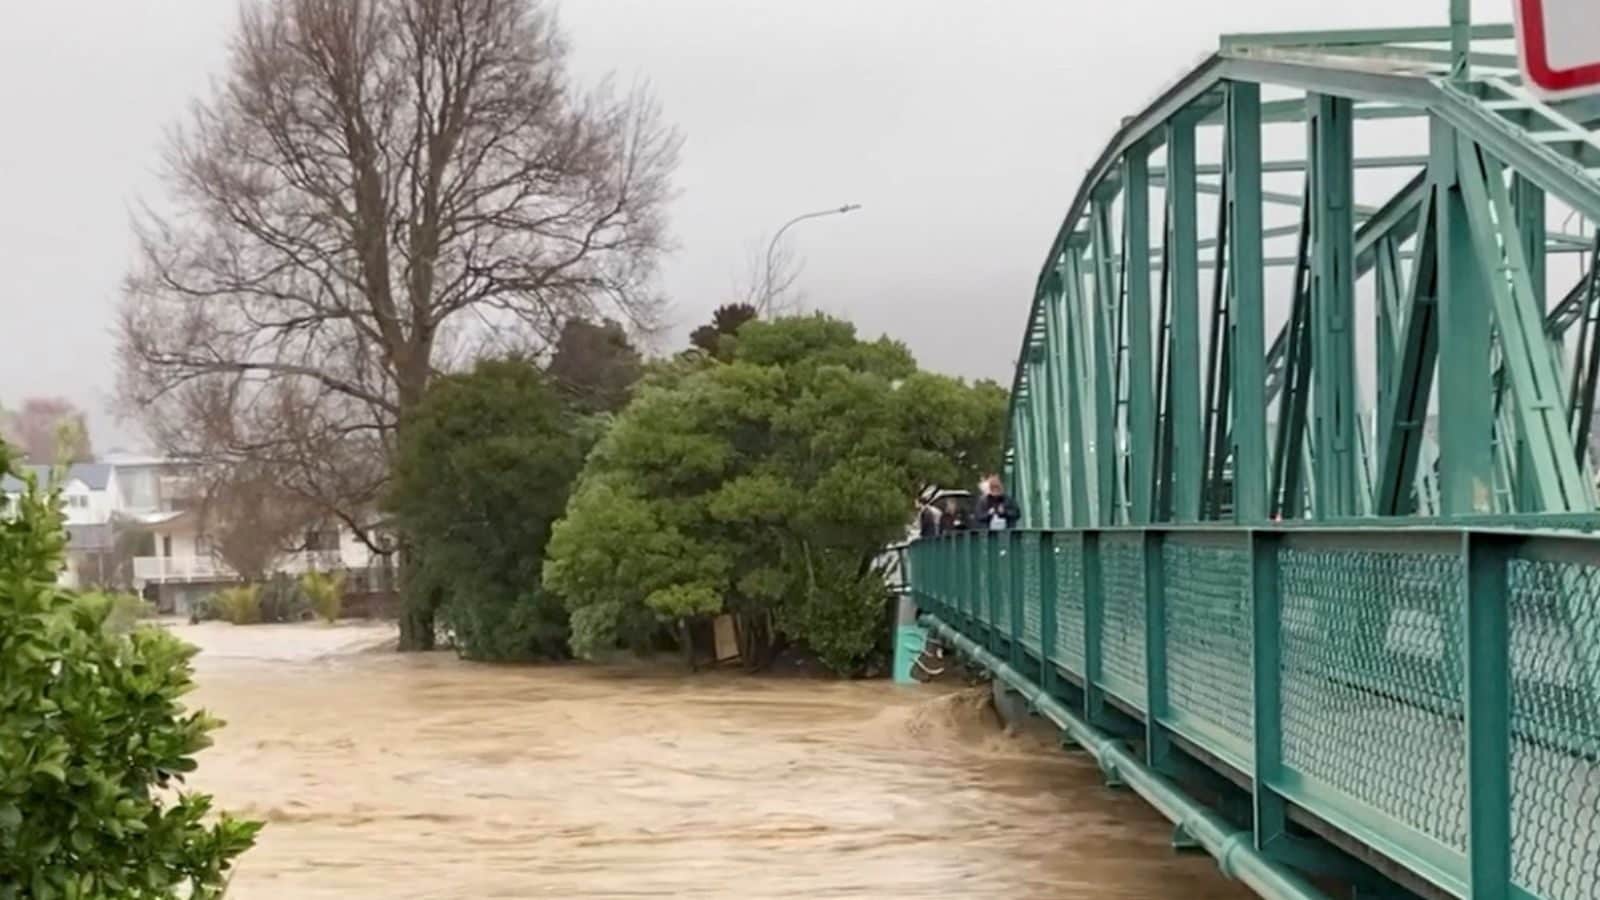 New Zealand Flood Hundreds Evacuated as 'Frightening' Deluge Hits